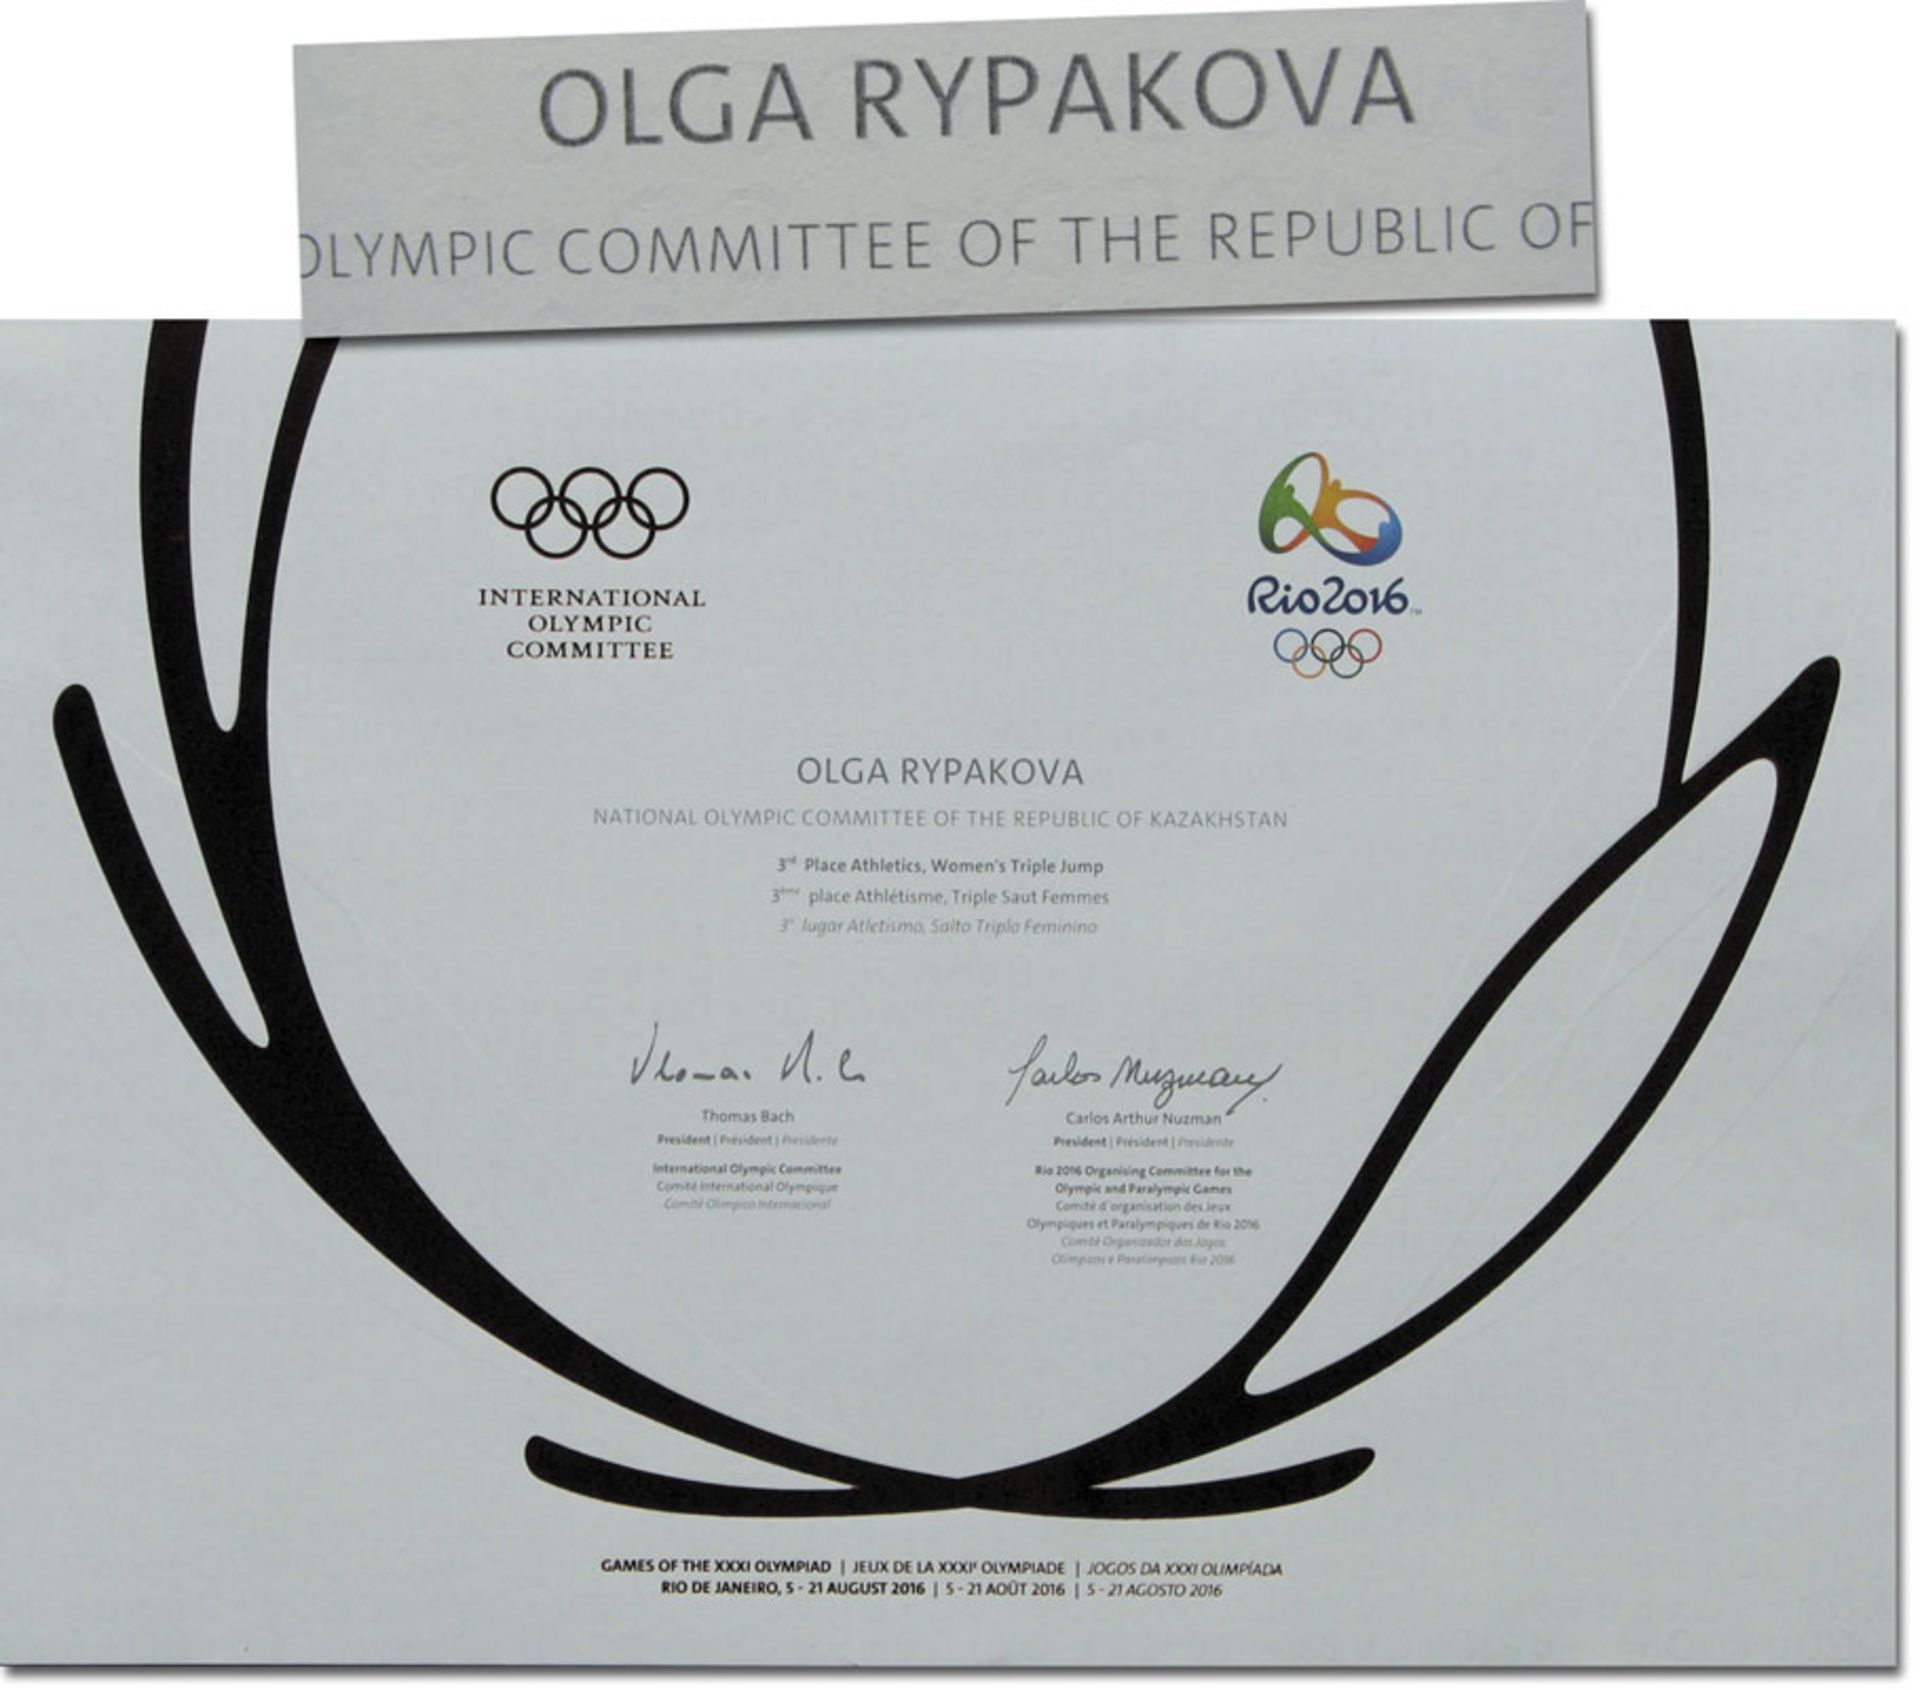 Olympiadiplom OSS2016 - Offizielle Siegerurkunde für die Olympischen Sommerspiele Rio de Janeiro 201